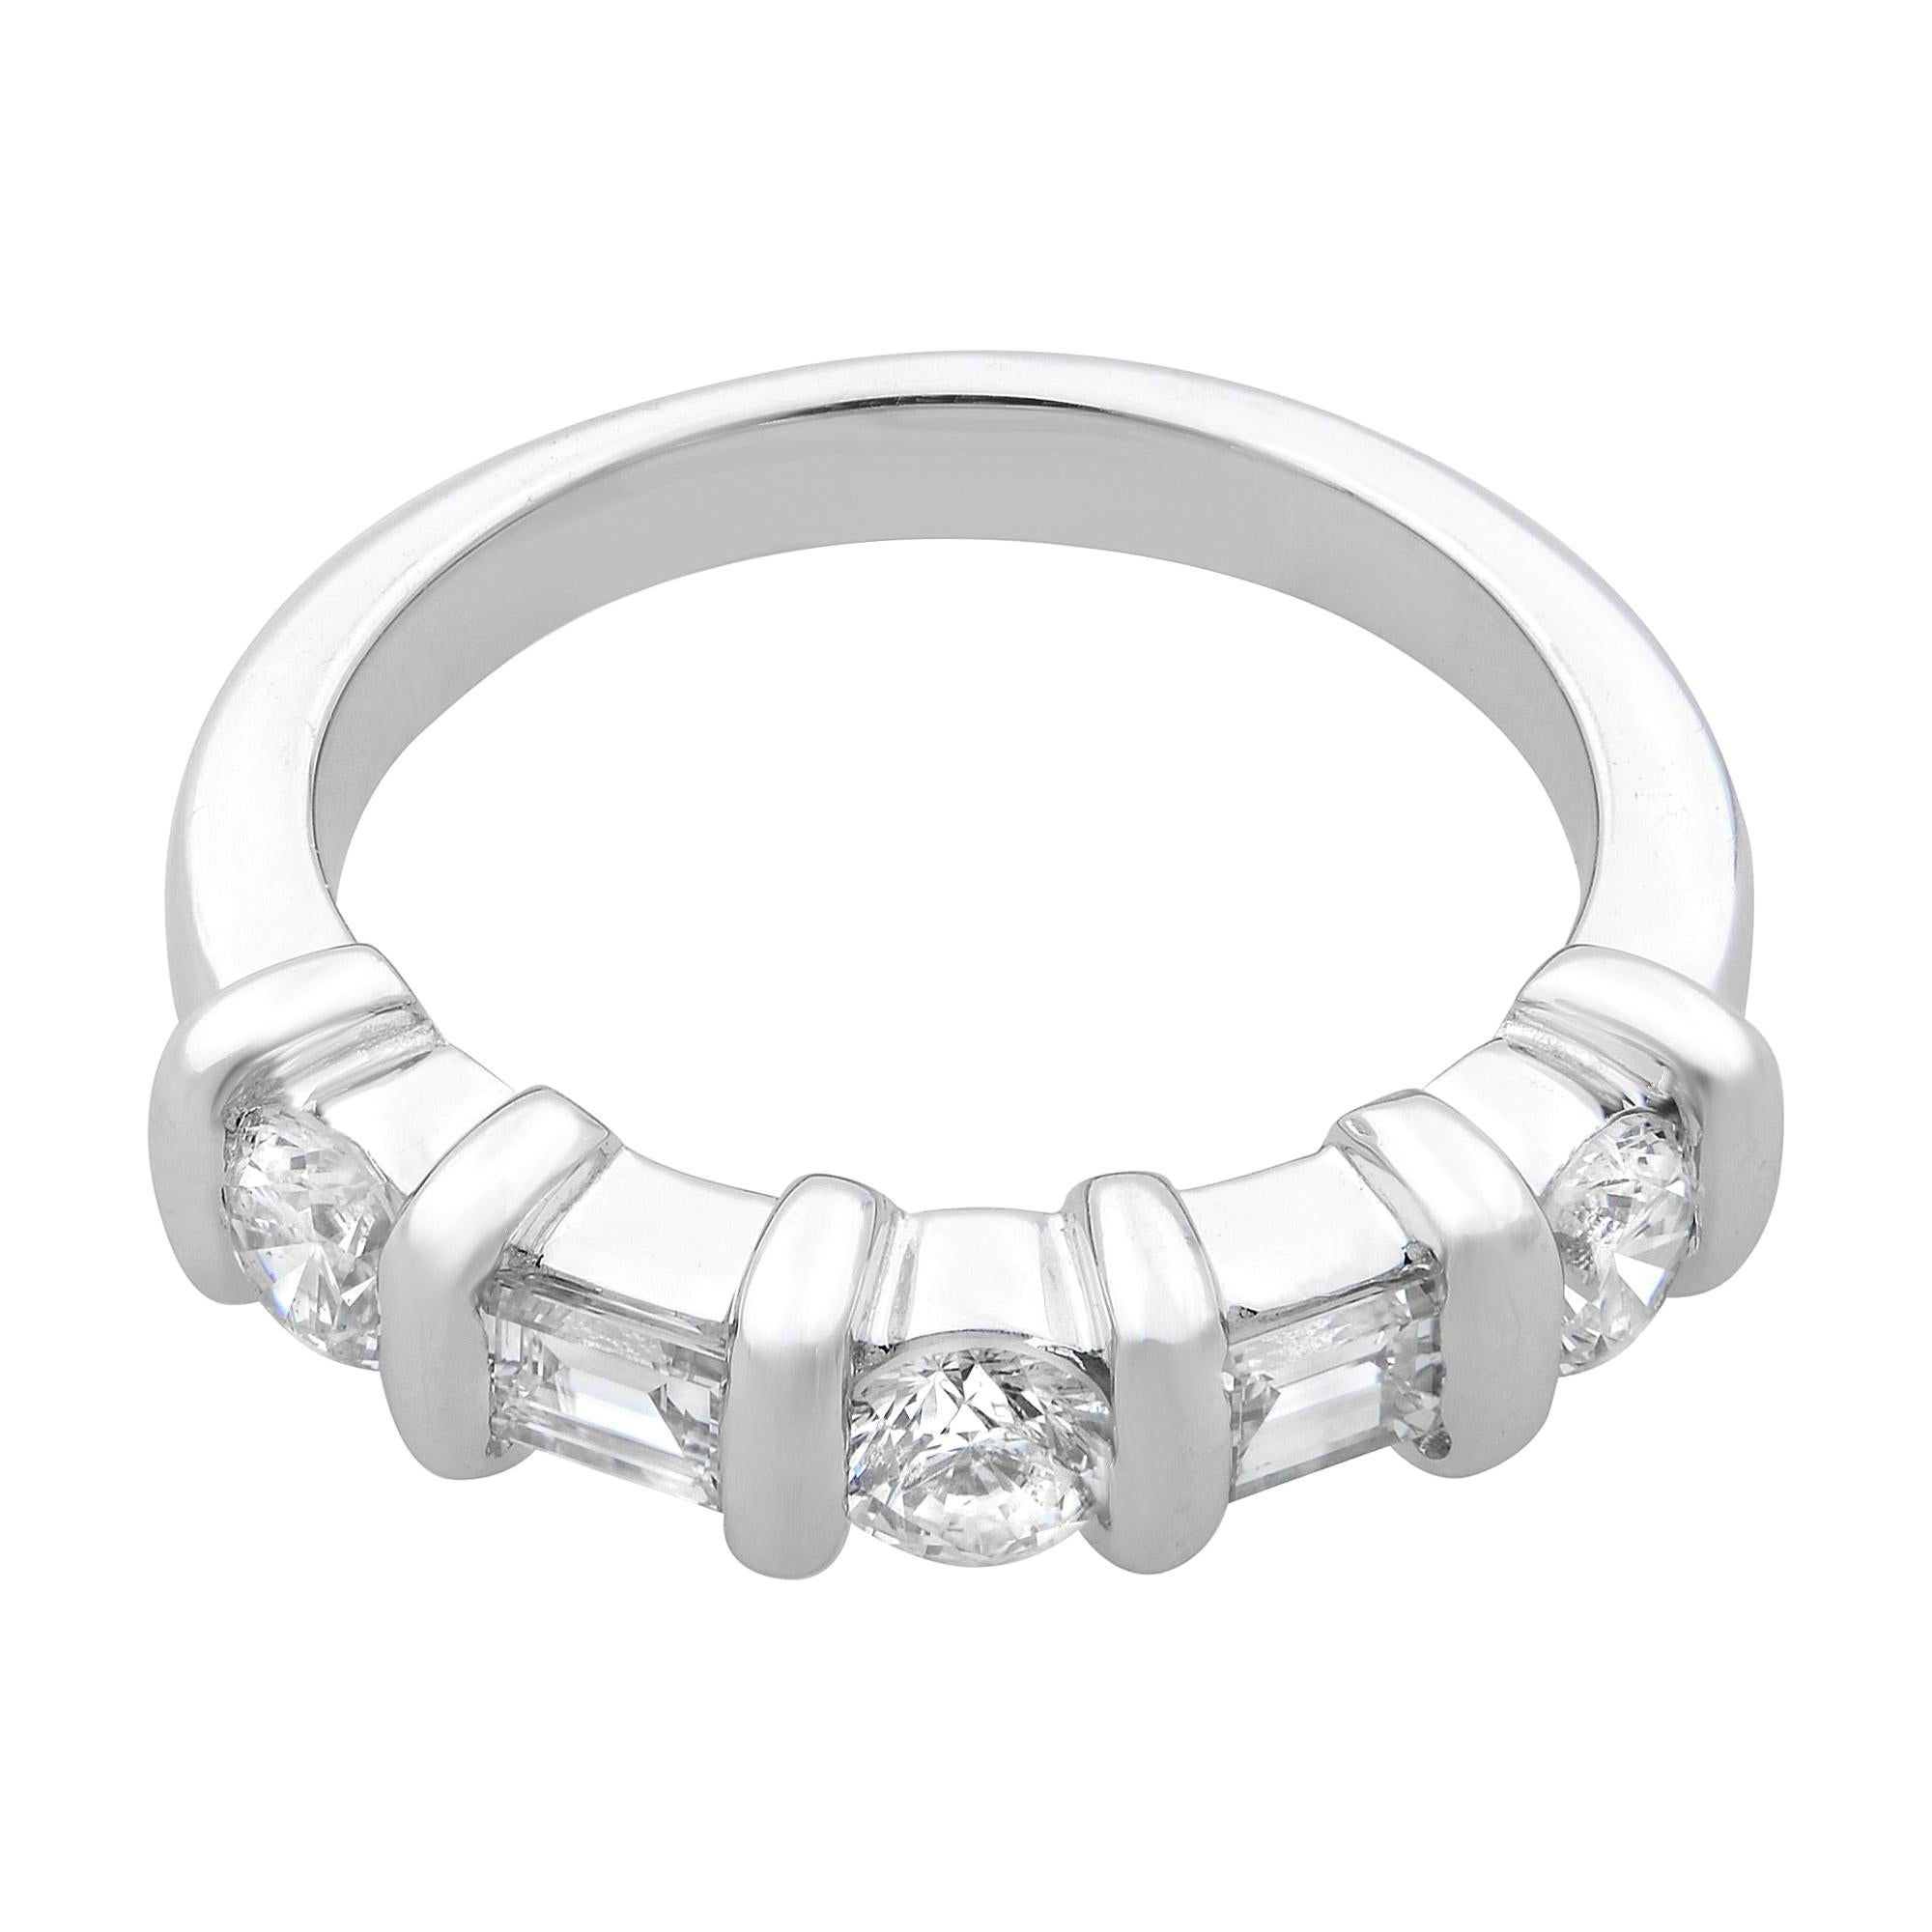 Dieser wunderschöne Diamantene Ehering besteht aus 3 Diamanten im Brillant- und 2 Diamanten im Baguetteschliff mit einem Gewicht von 0,66 ct, die mit glatten, glänzenden vertikalen, abgerundeten Rillen versehen sind. Diamant Farbe G und SI1